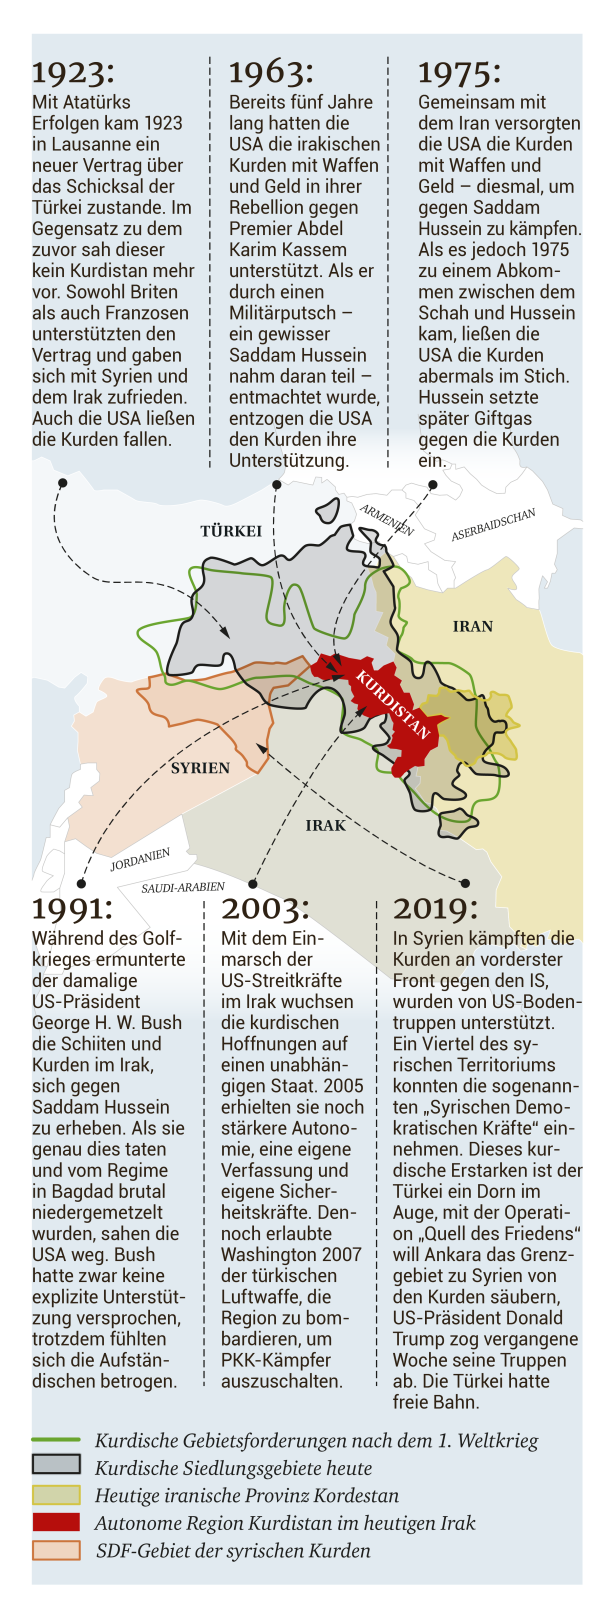 So oft wurden die Kurden schon von den USA im Stich gelassen